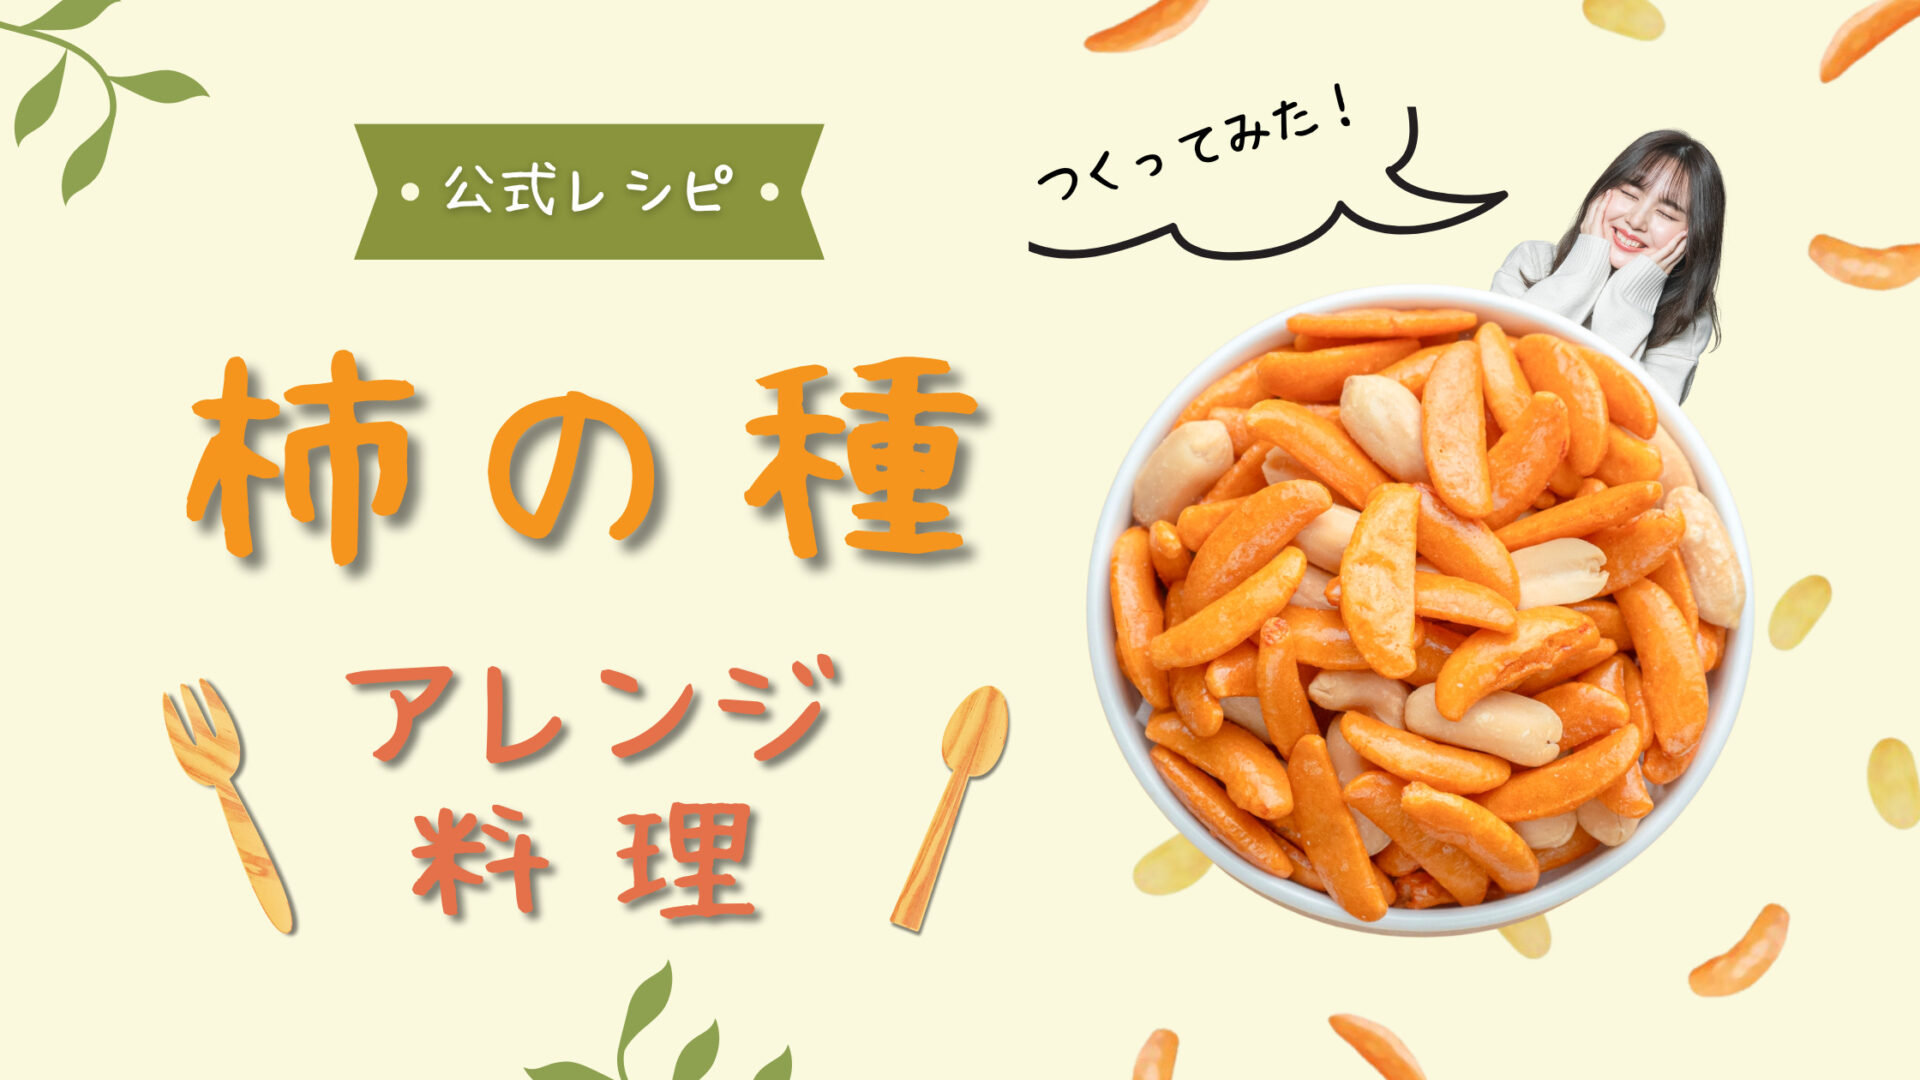 柿の種 公式アレンジレシピ料理【作ってみた】